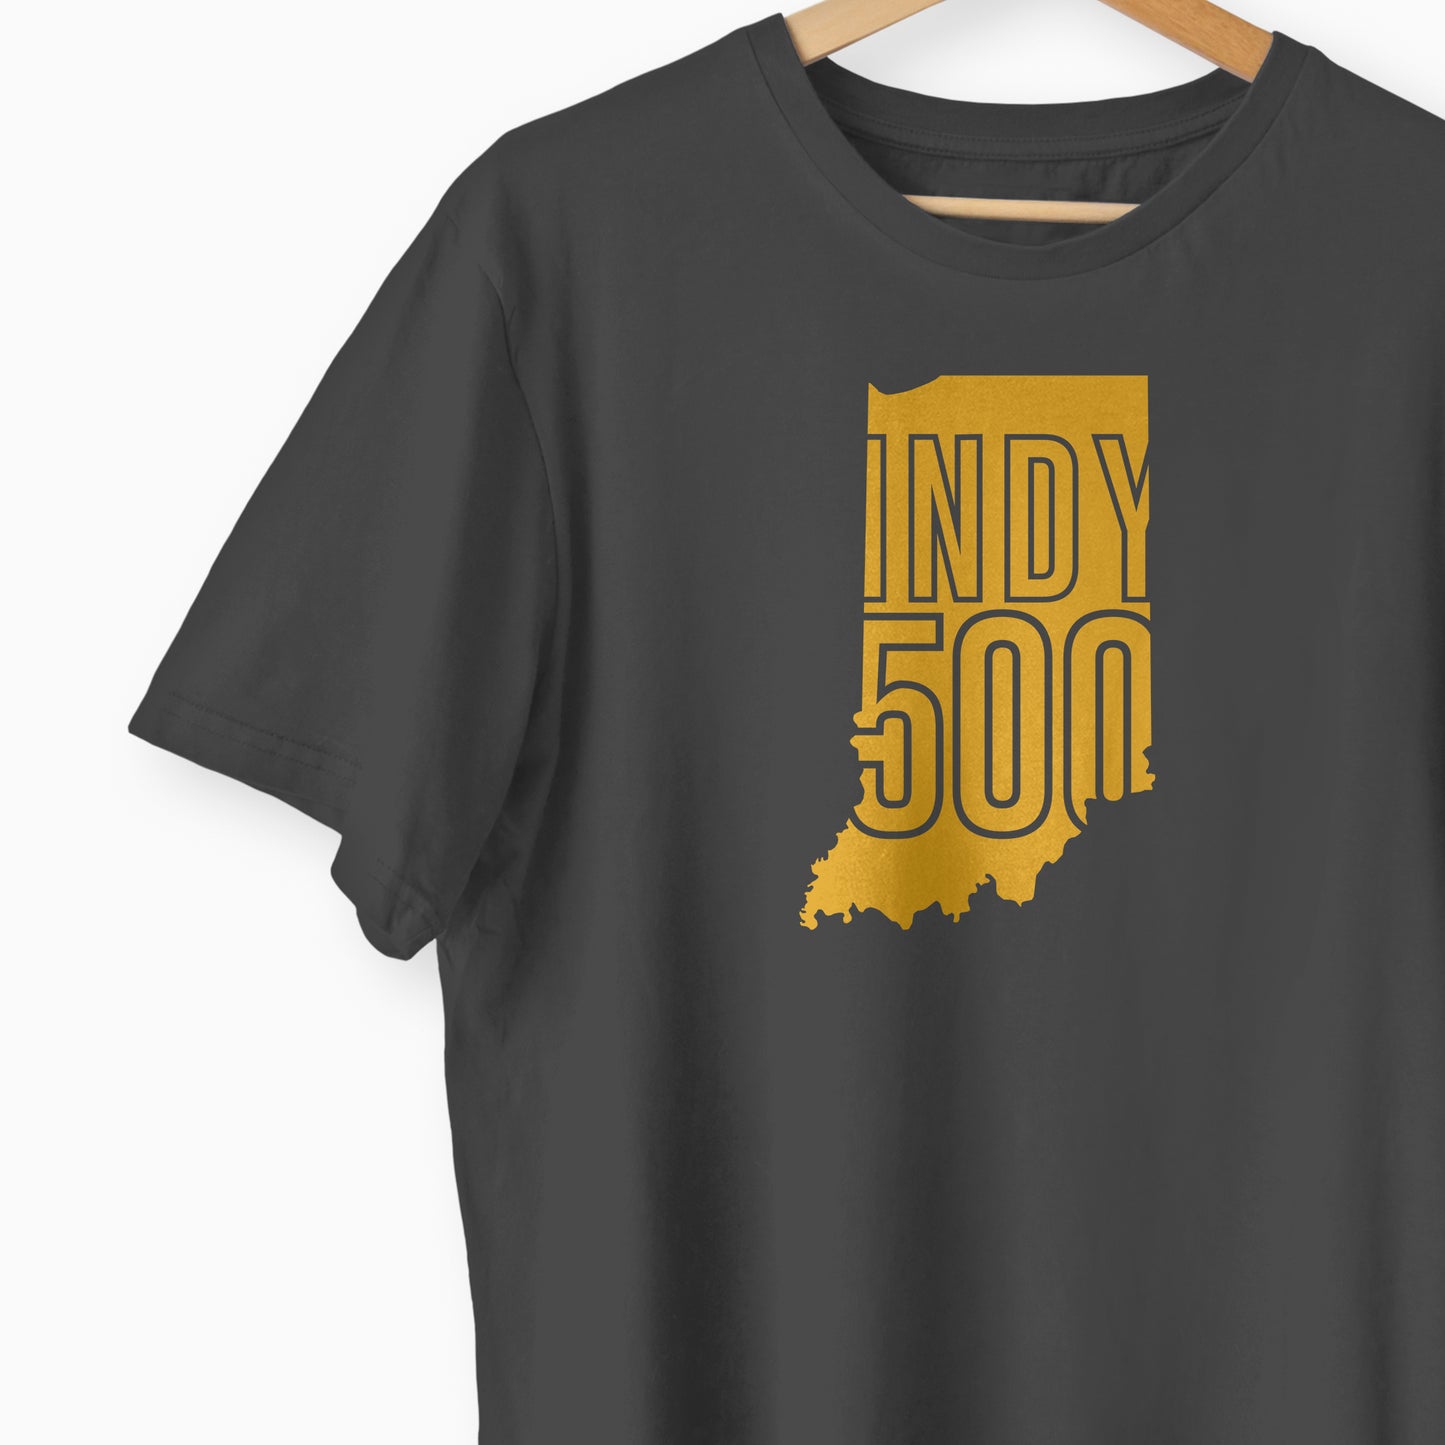 Indy500 Black T-shirt